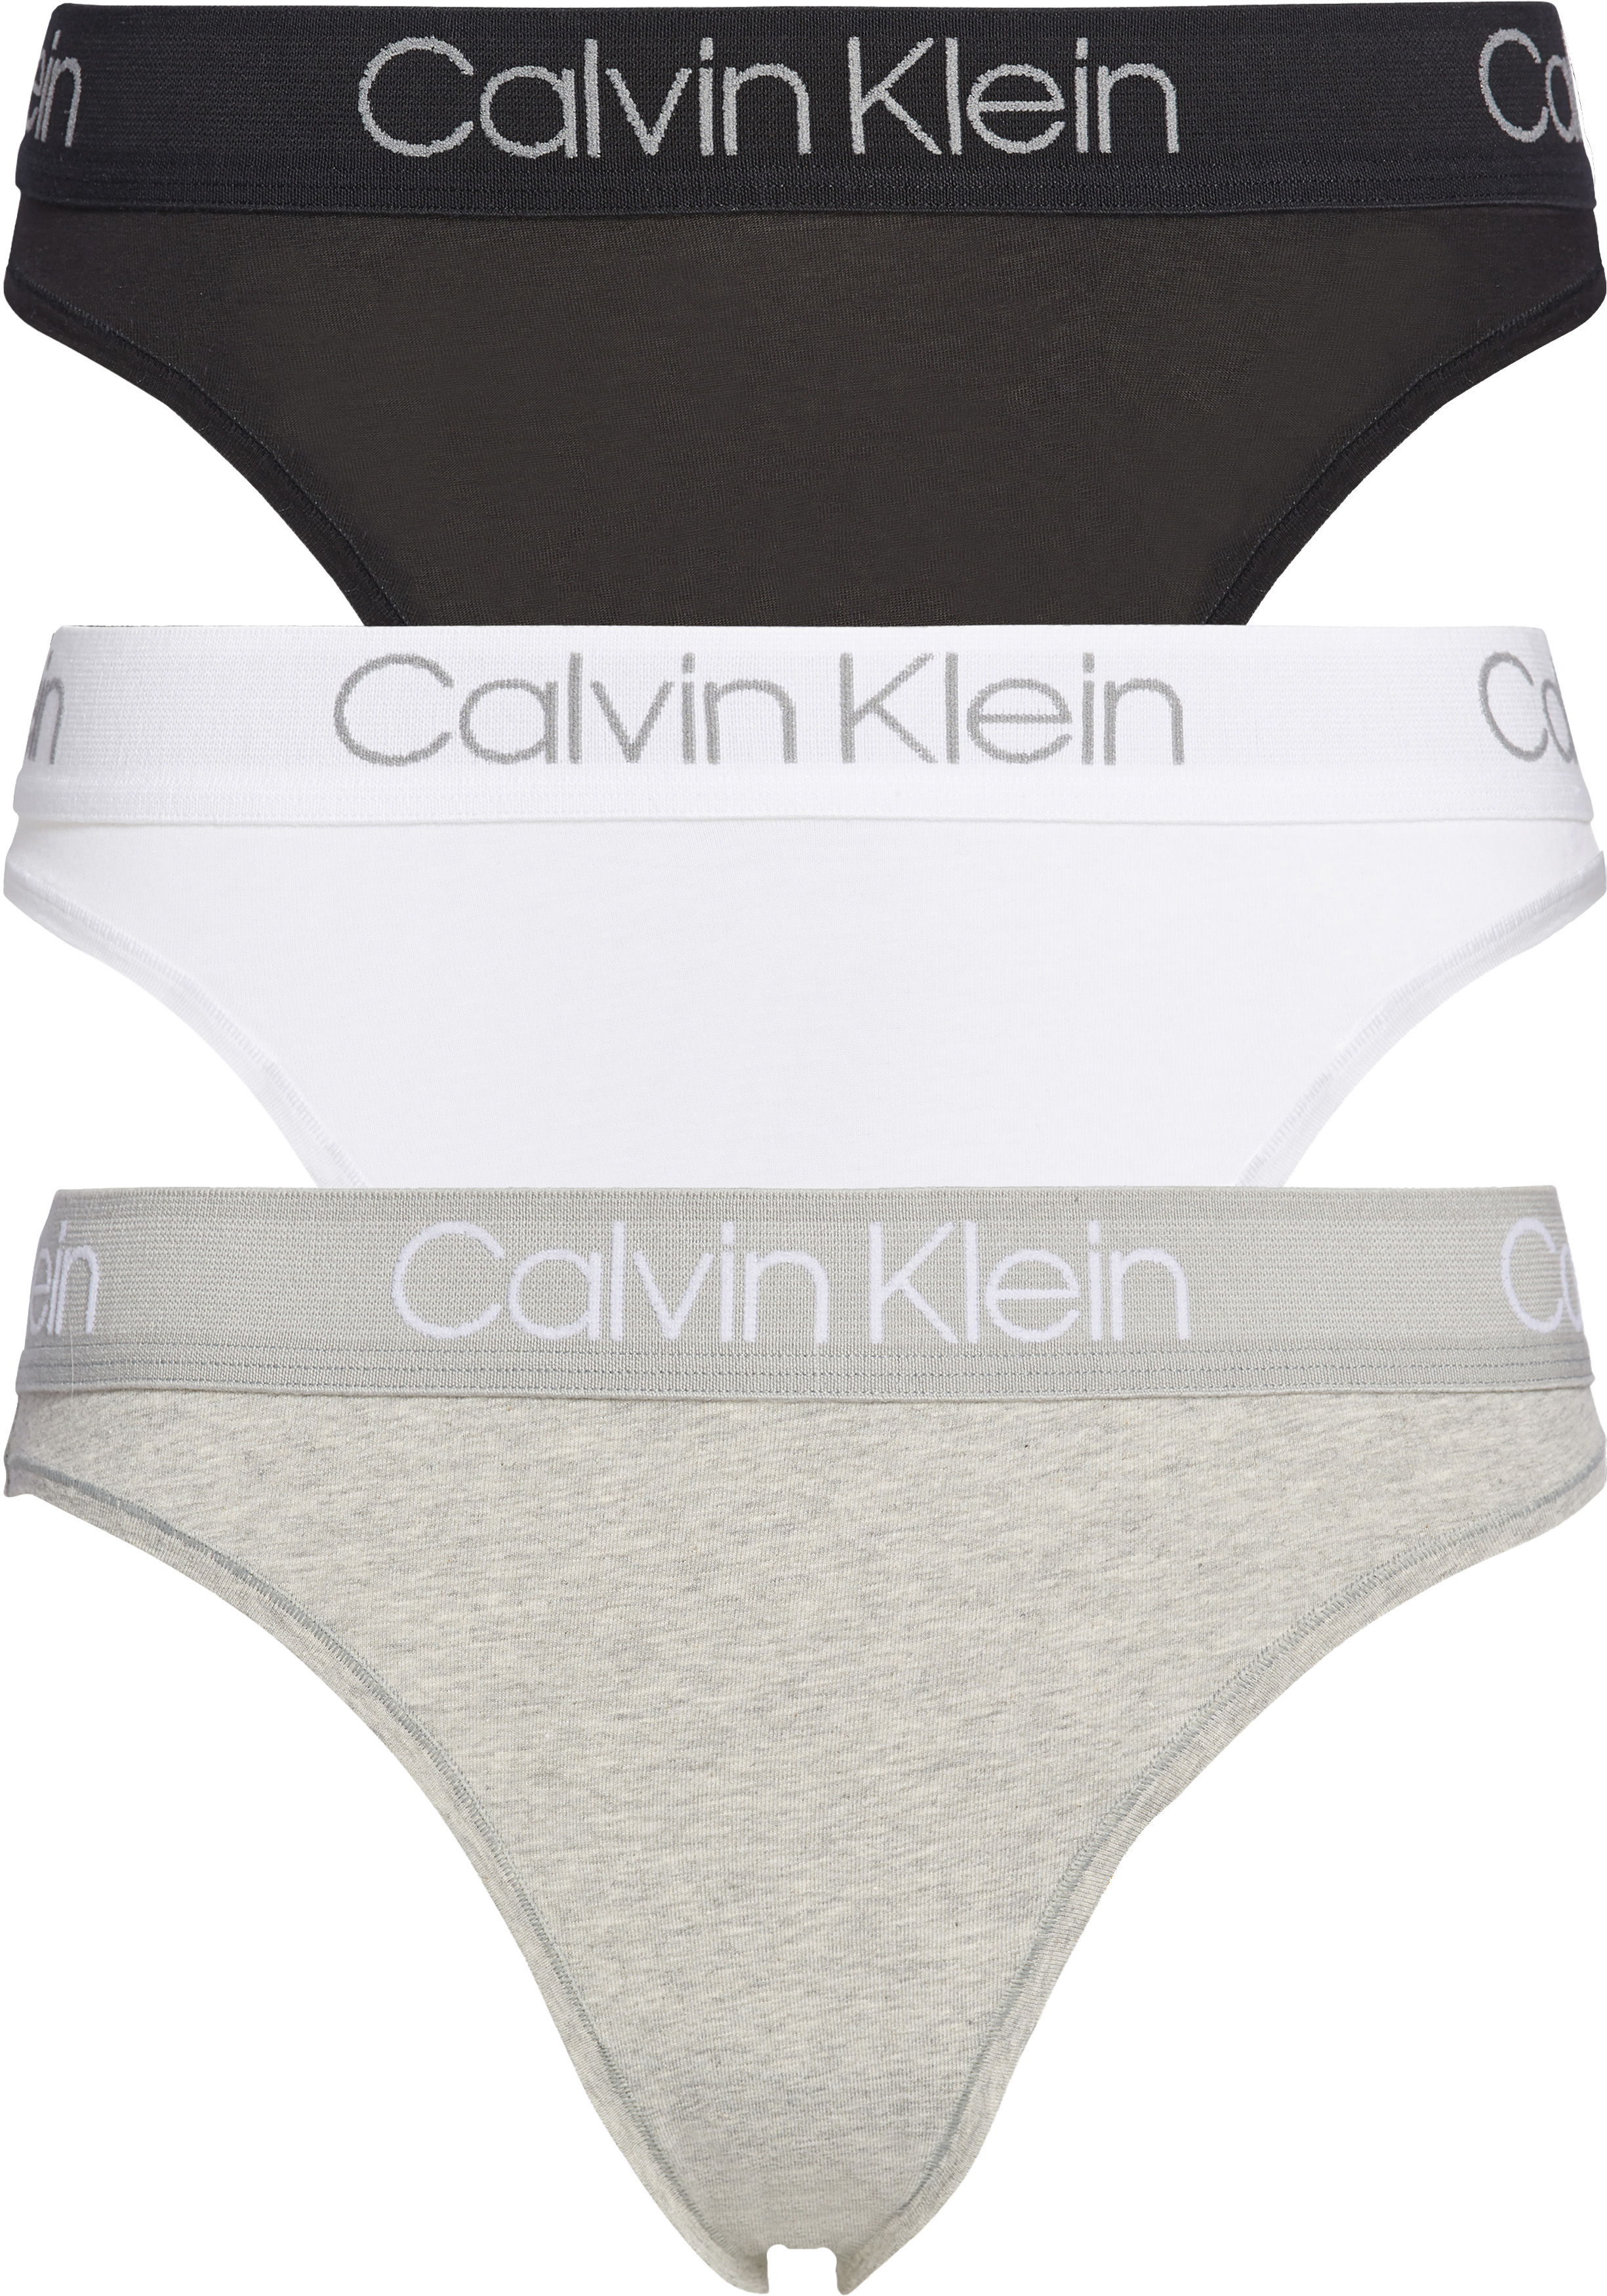 Tegenwerken films Contract Calvin Klein dames tanga slips (3-pack), met hoge beenuitsnijding,... -  Zomer SALE tot 50% korting